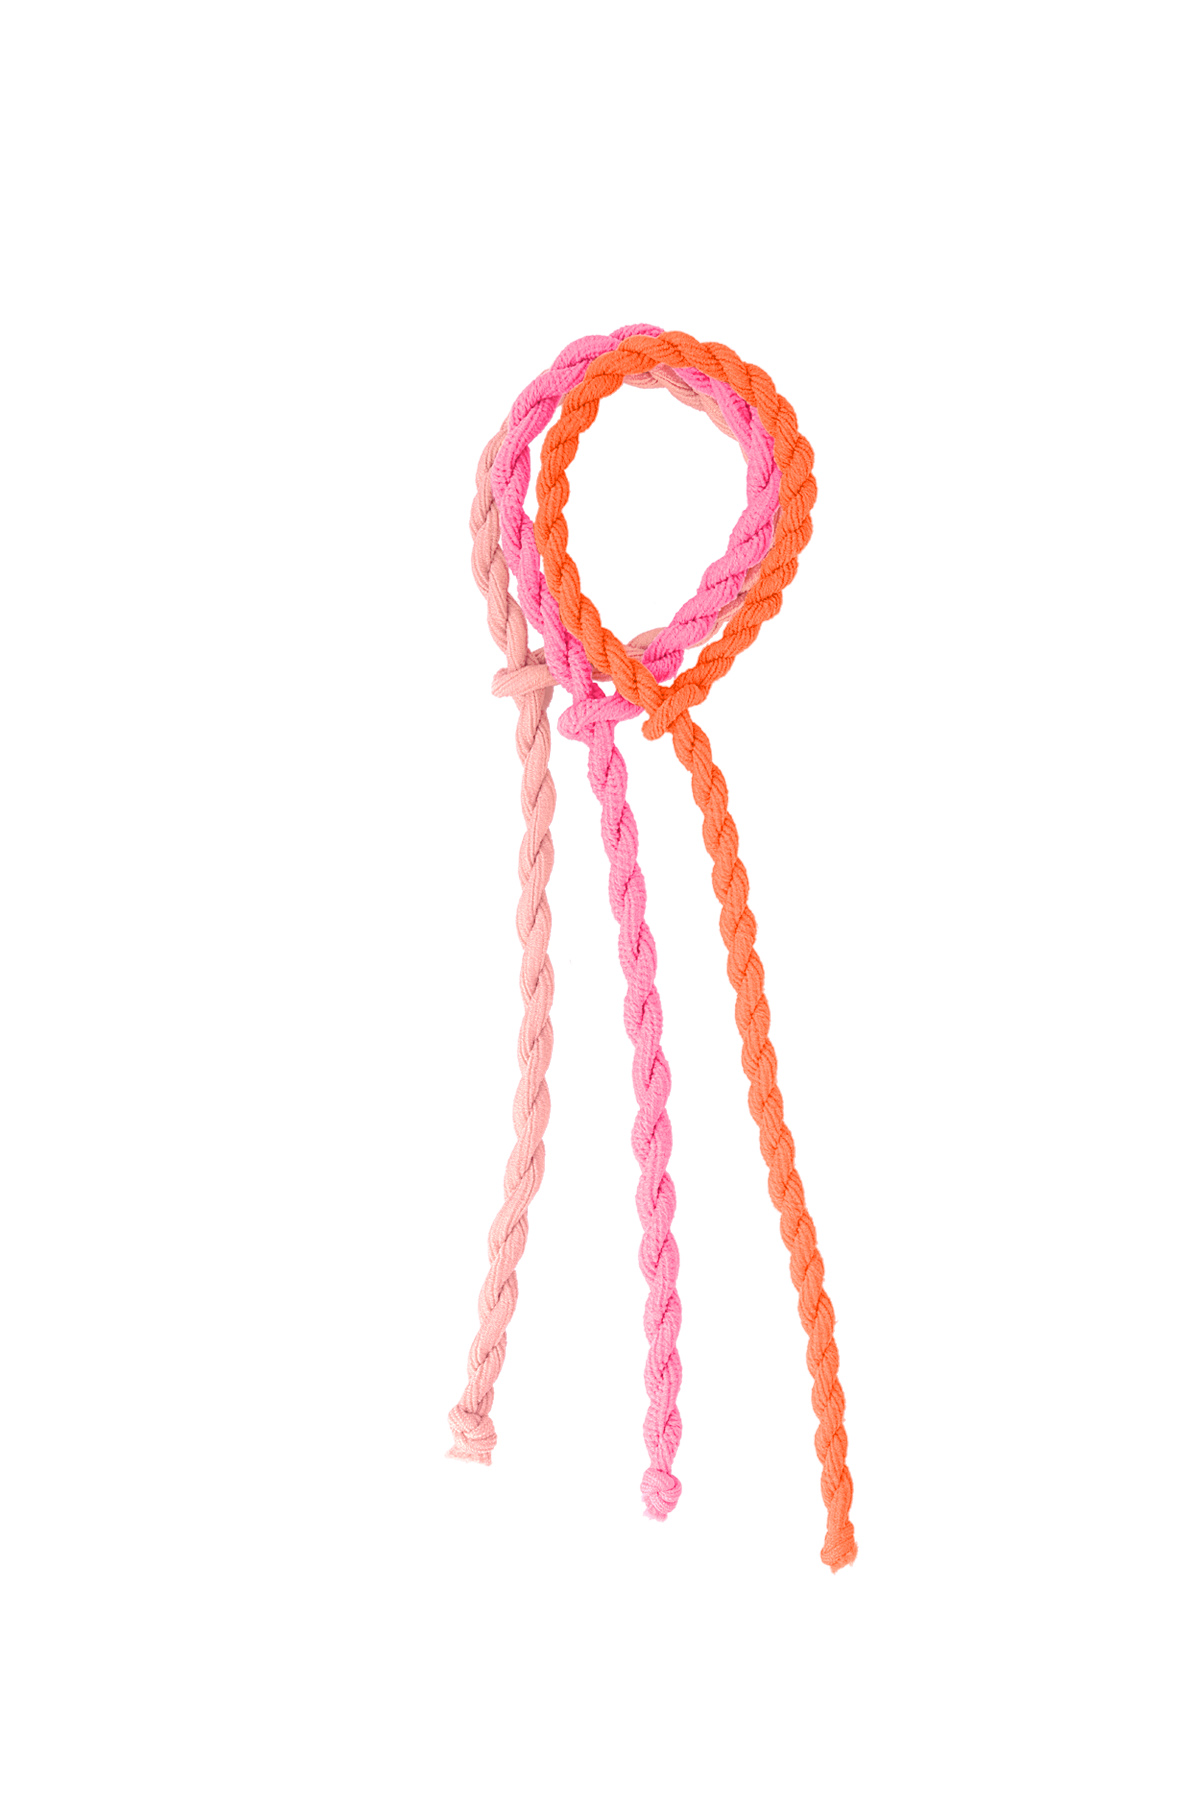 Elastico per capelli attorcigliati - arancione e rosa h5 